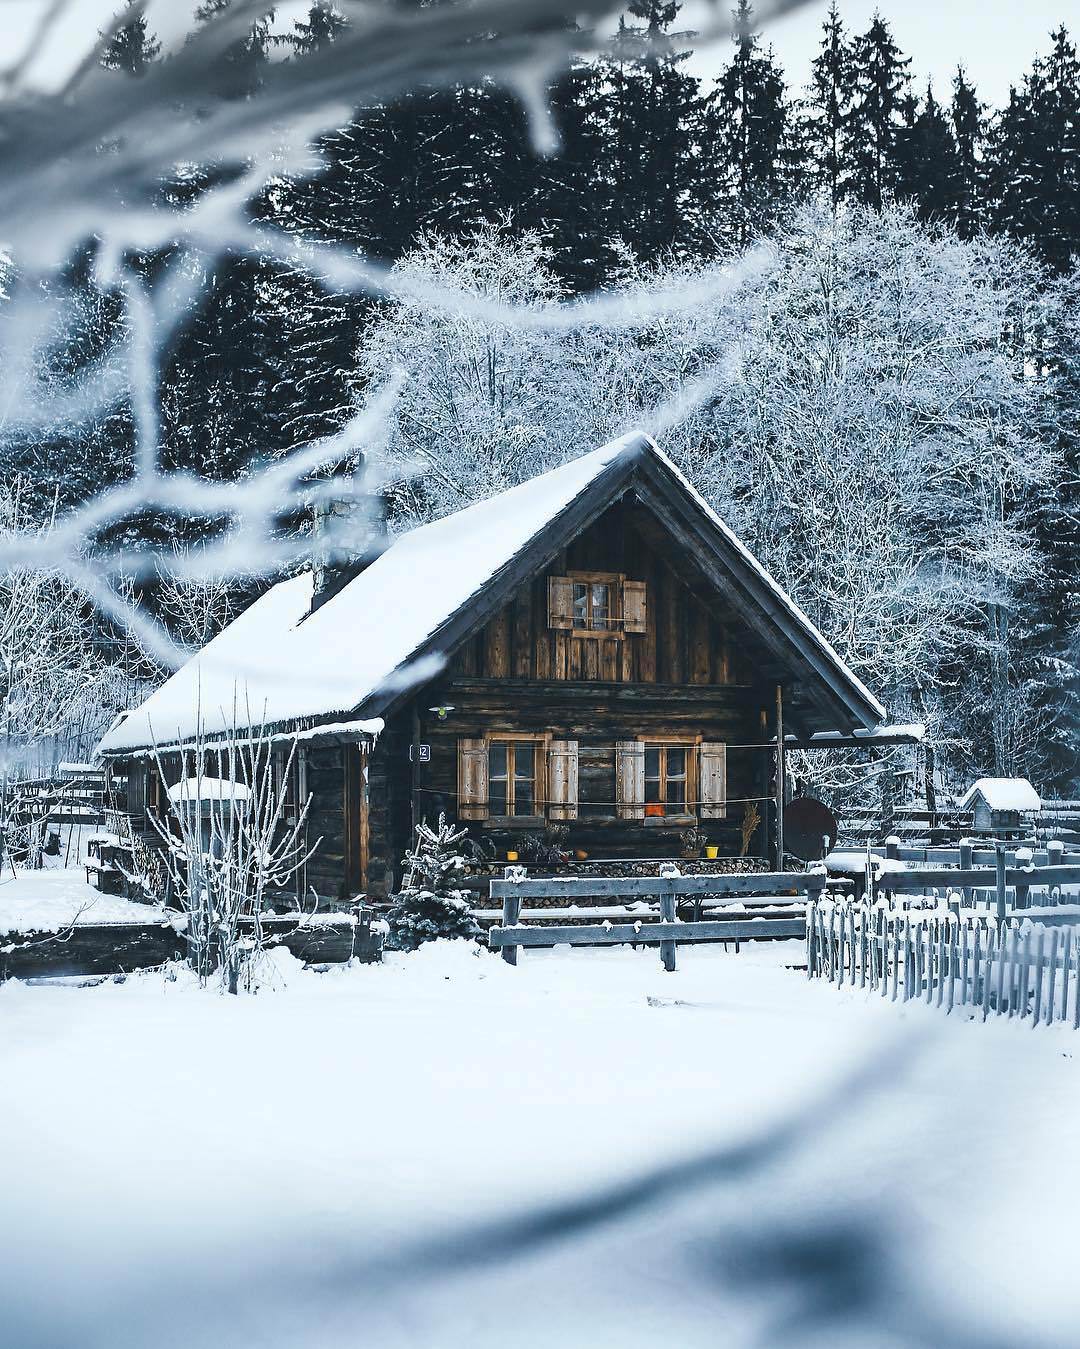 The T. reccomend winter cabin